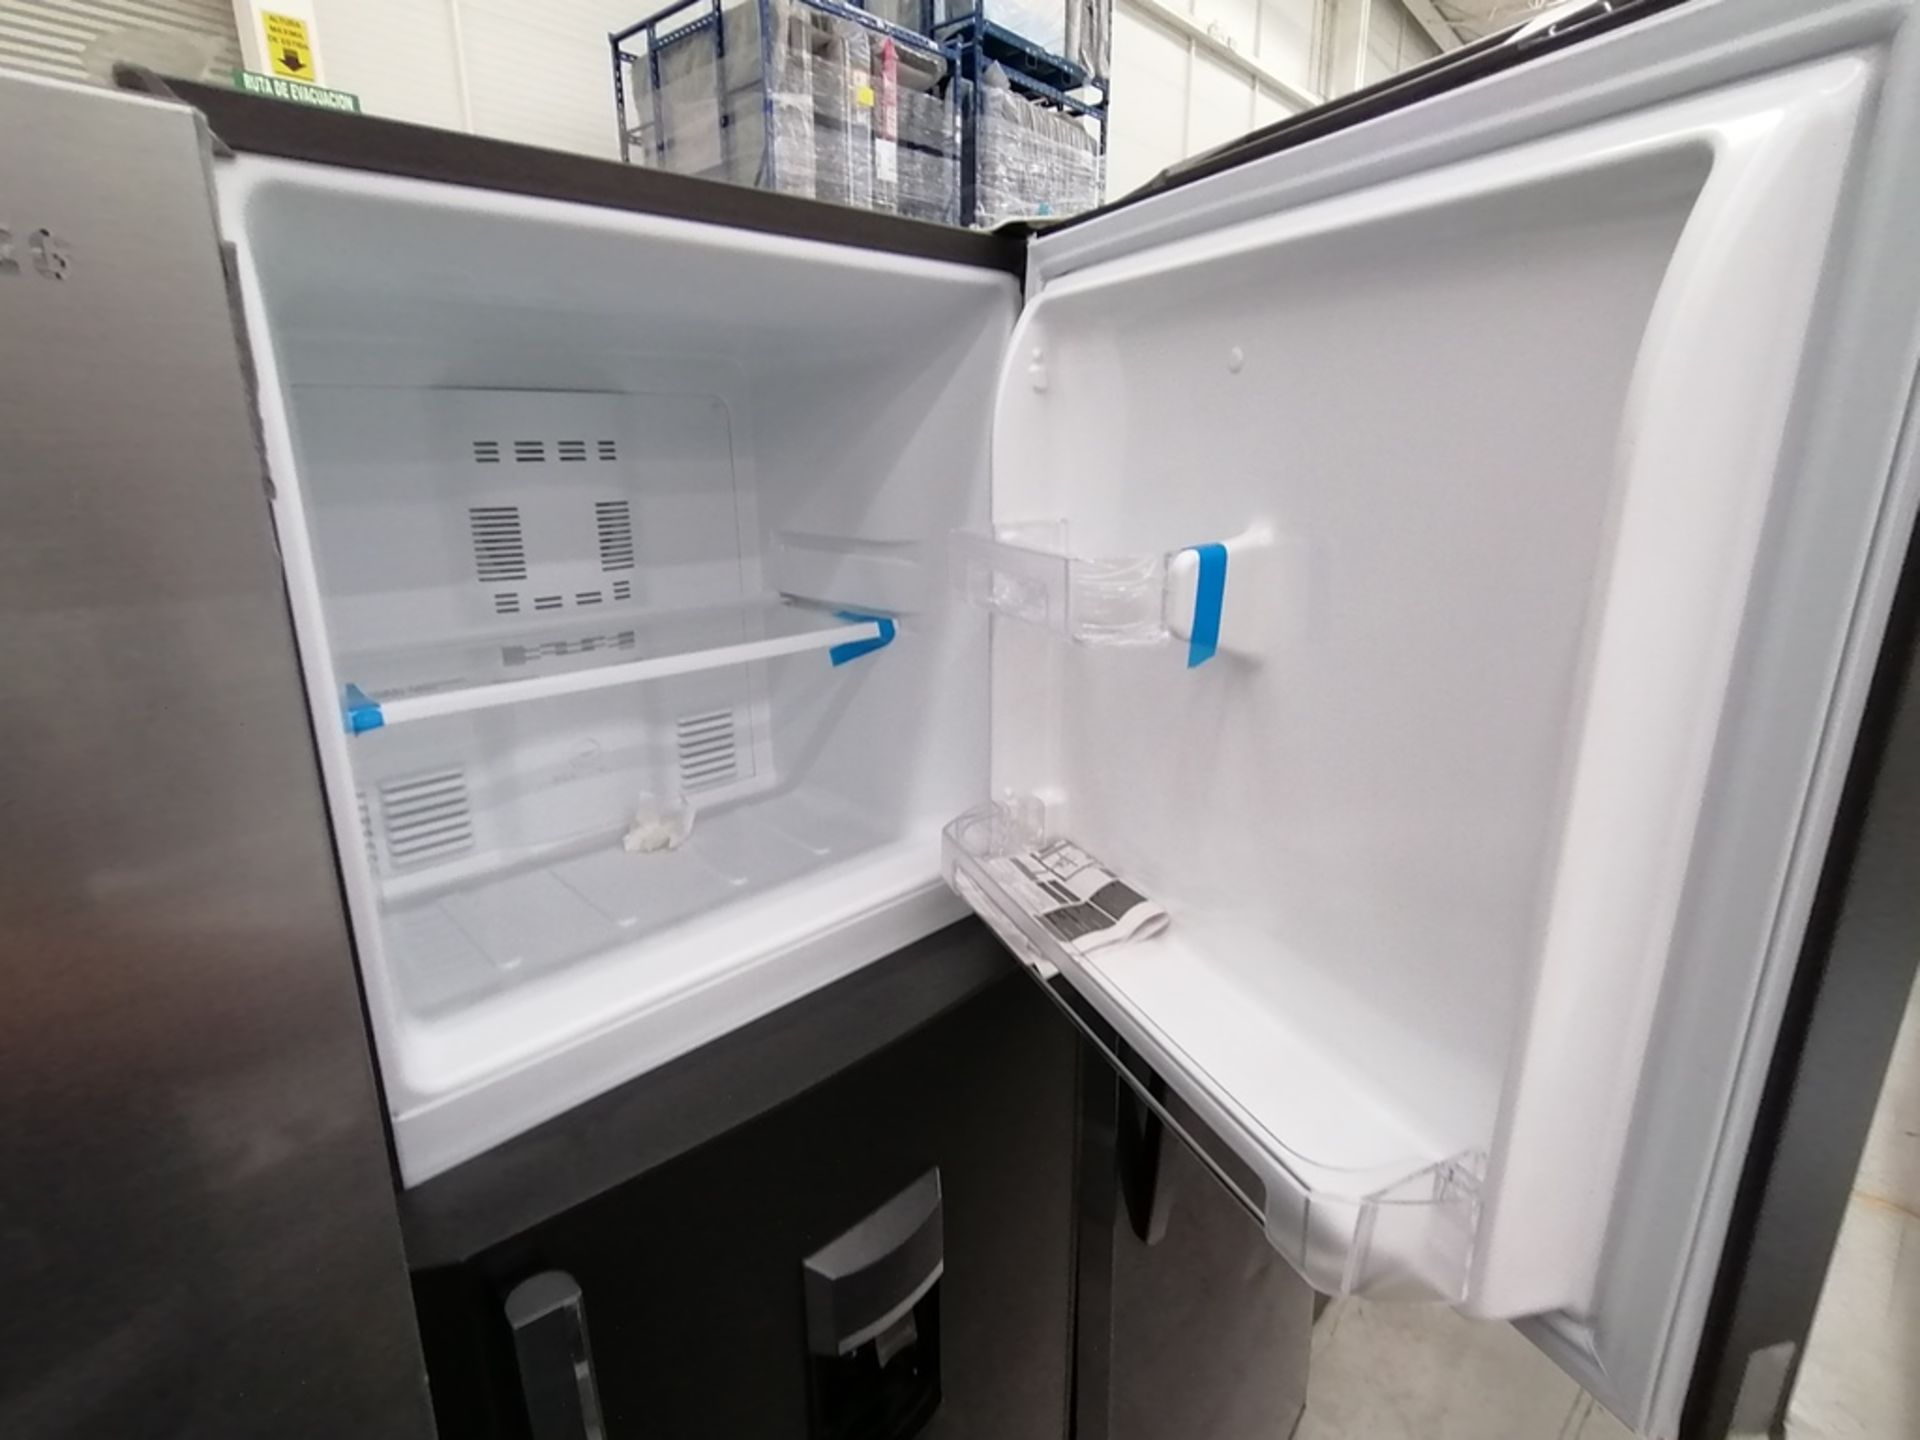 Lote de 2 refrigeradores incluye: 1 Refrigerador con dispensador de agua, Marca Mabe, Modelo RMA300 - Image 4 of 15